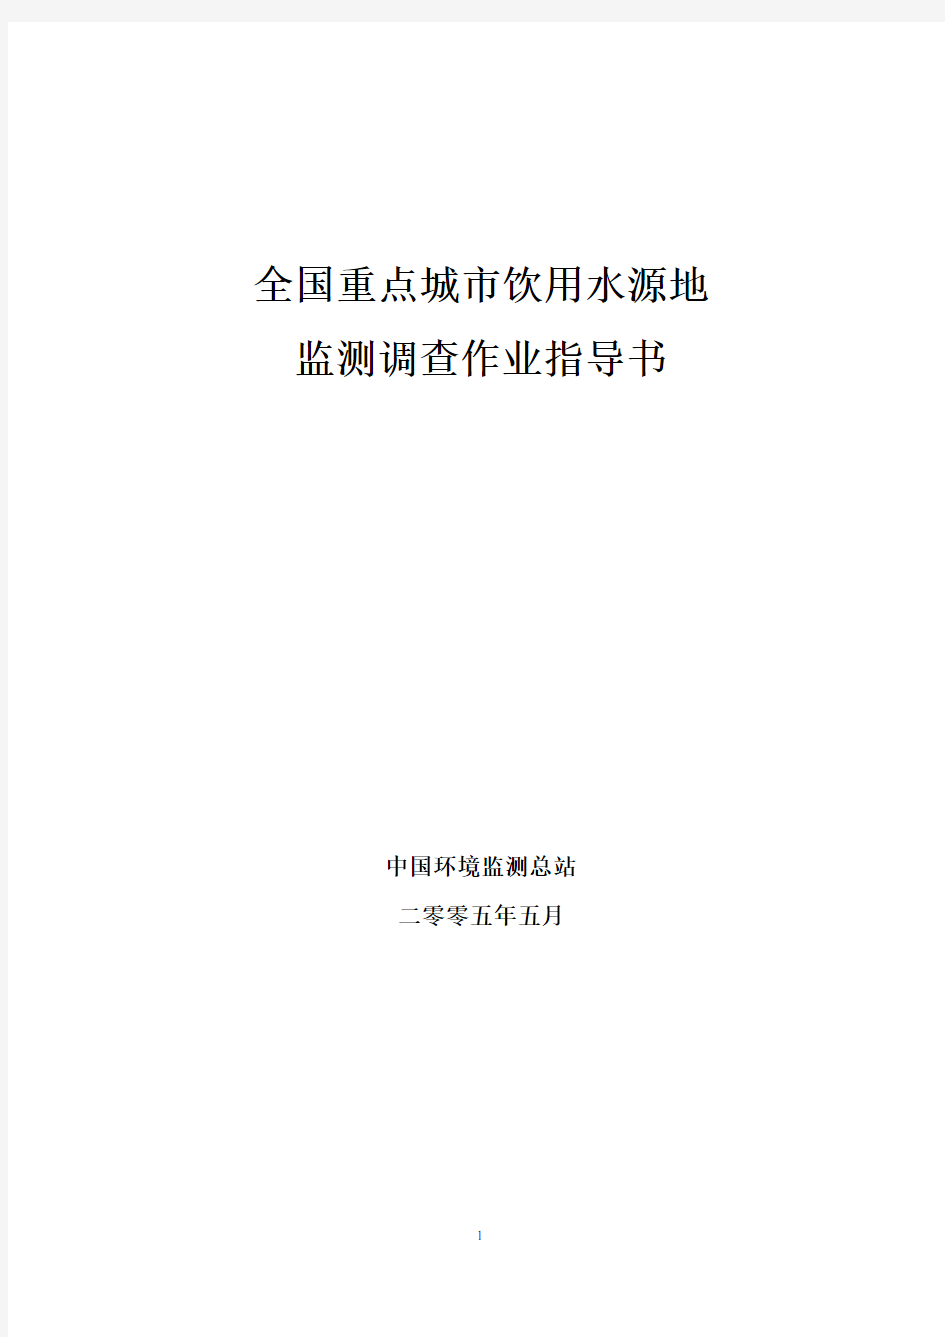 中国环境监测总站饮用水源地监测调查作业指导书